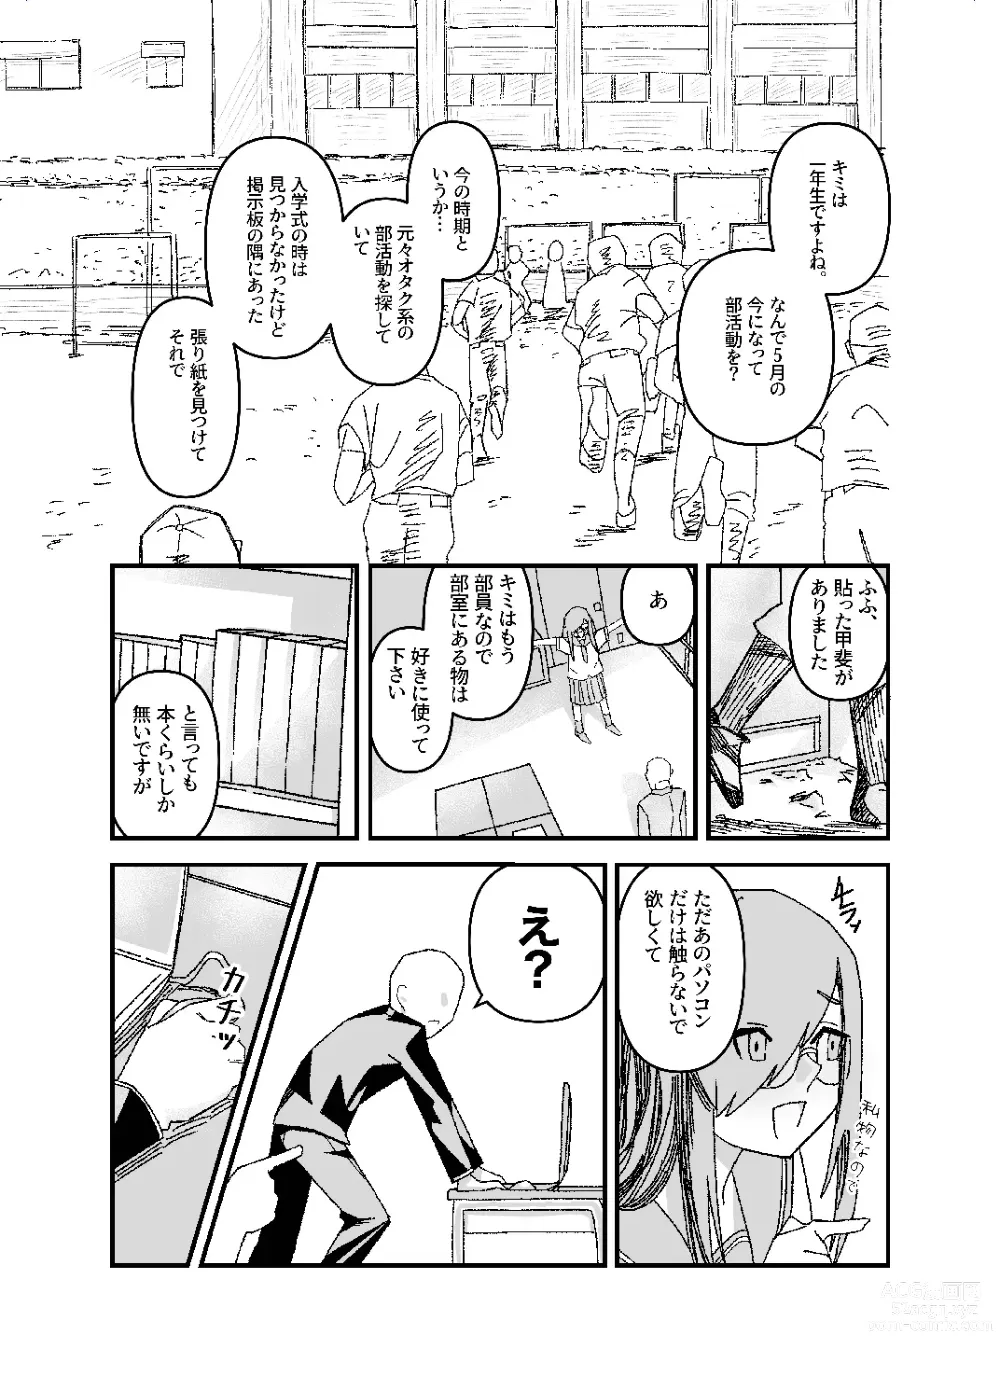 Page 11 of doujinshi Setsuritsu! ASMR-bu!